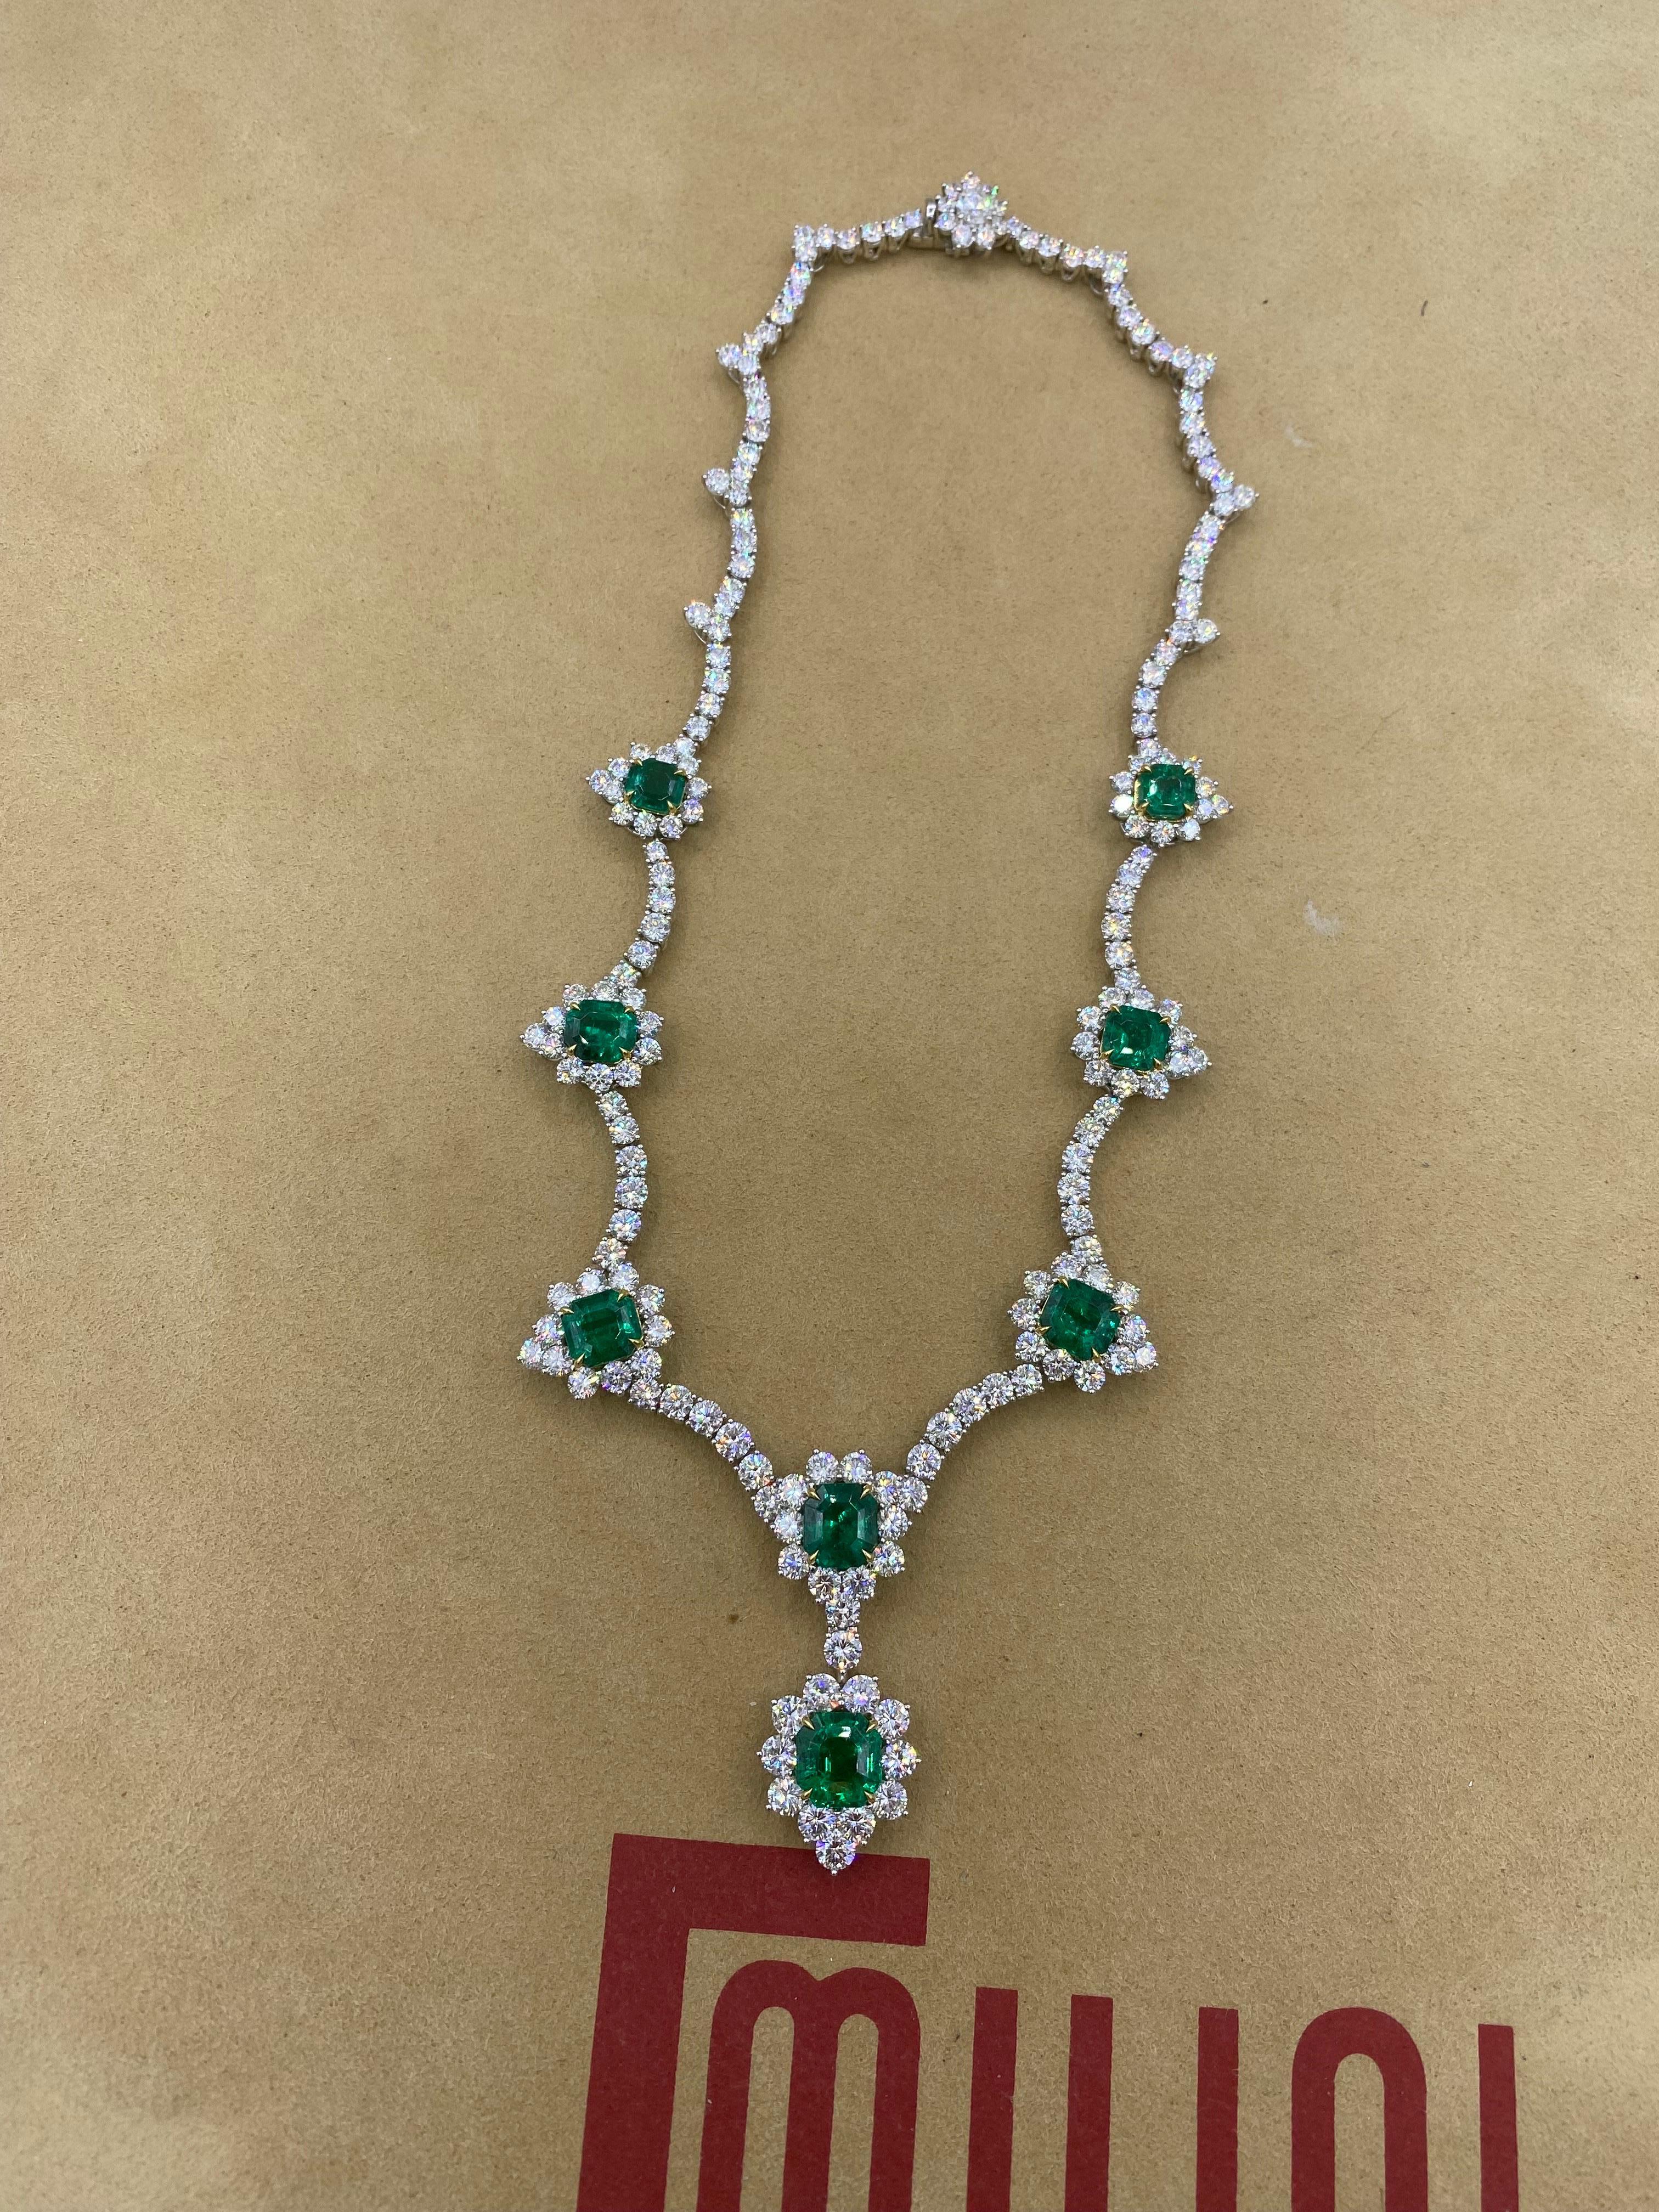 Von Emilio Jewelry, einem bekannten und angesehenen Großhändler mit Sitz auf der berühmten Fifth Avenue in New York, 
Wir haben die feinsten Muzo-Smaragde für diese Halskette ausgewählt. Das Beste aus unseren Collections. Lebendig grüne Smaragde mit